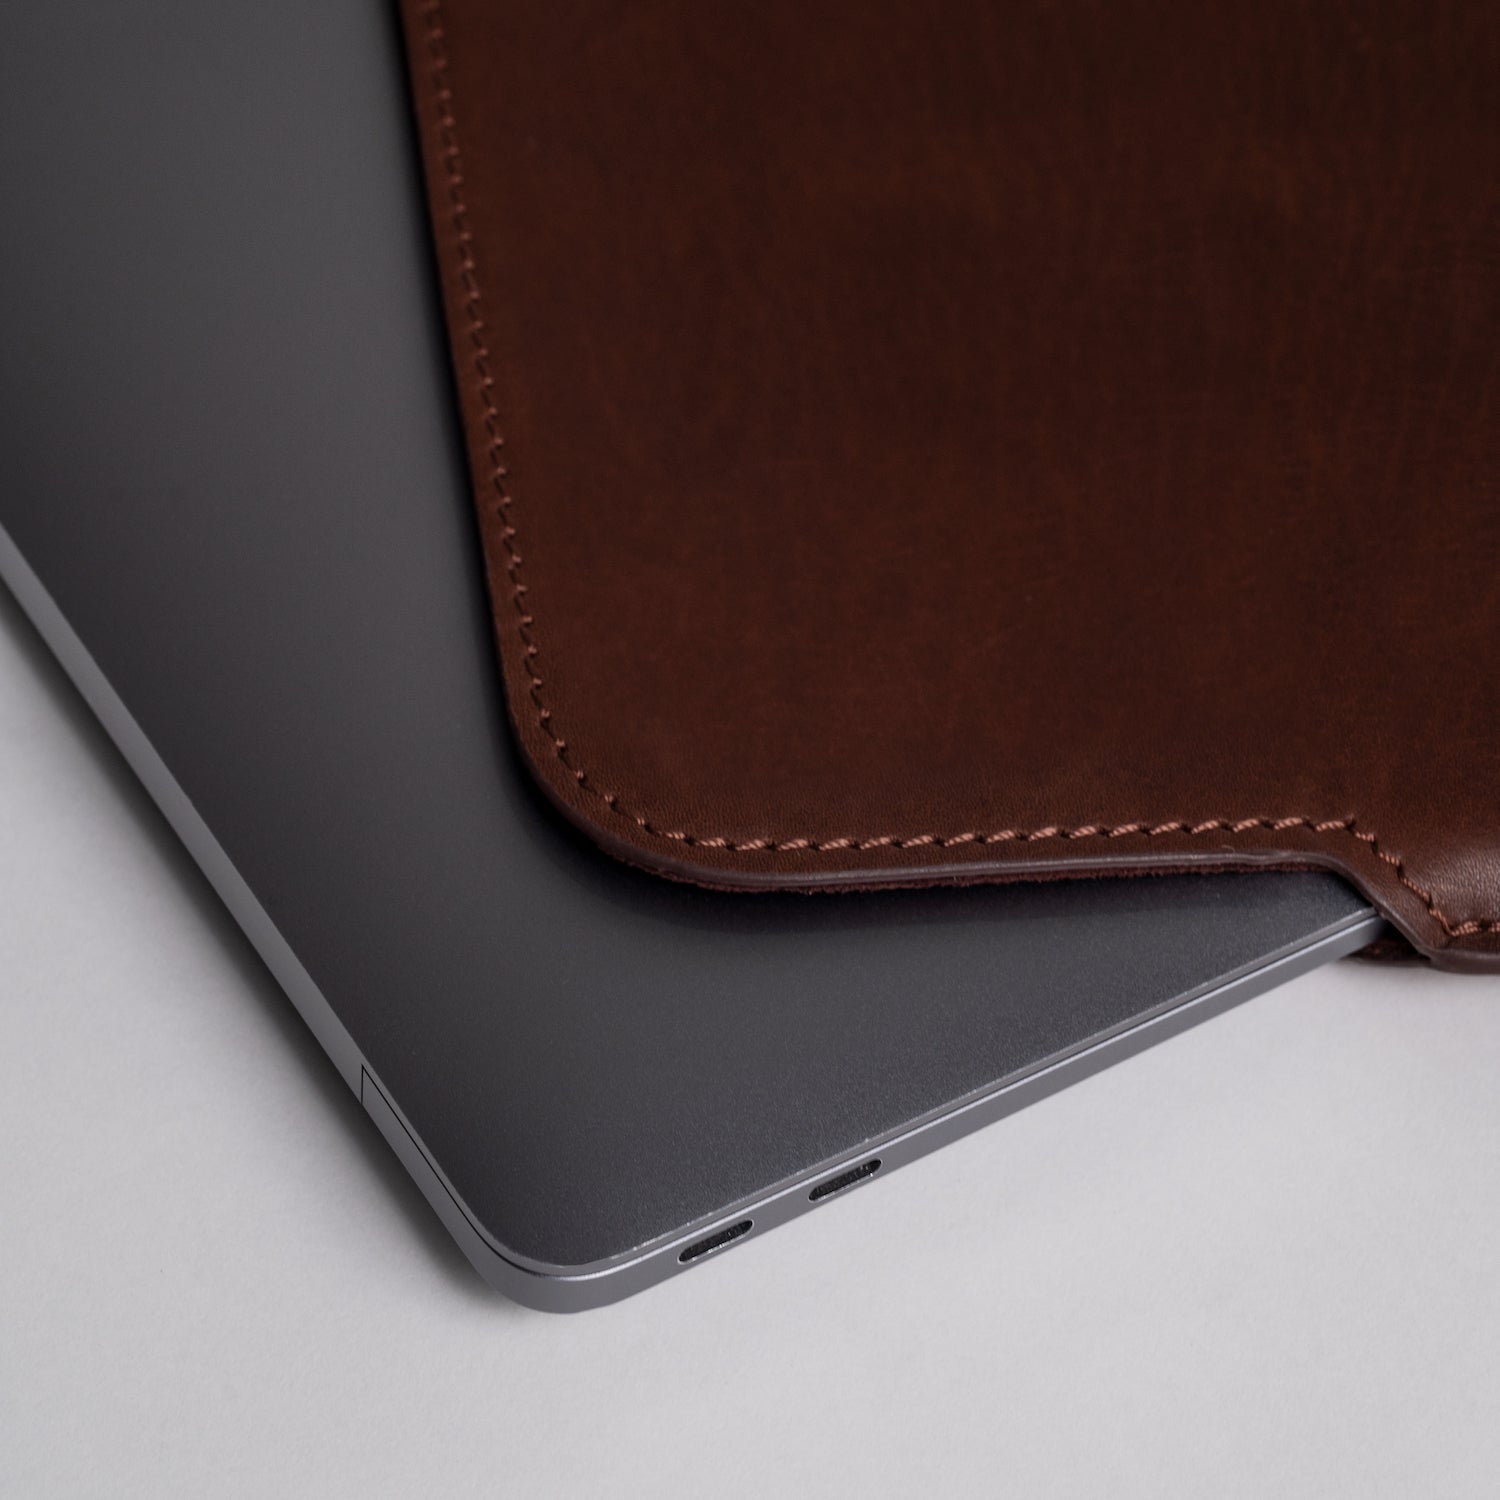 Macbook Sleeve